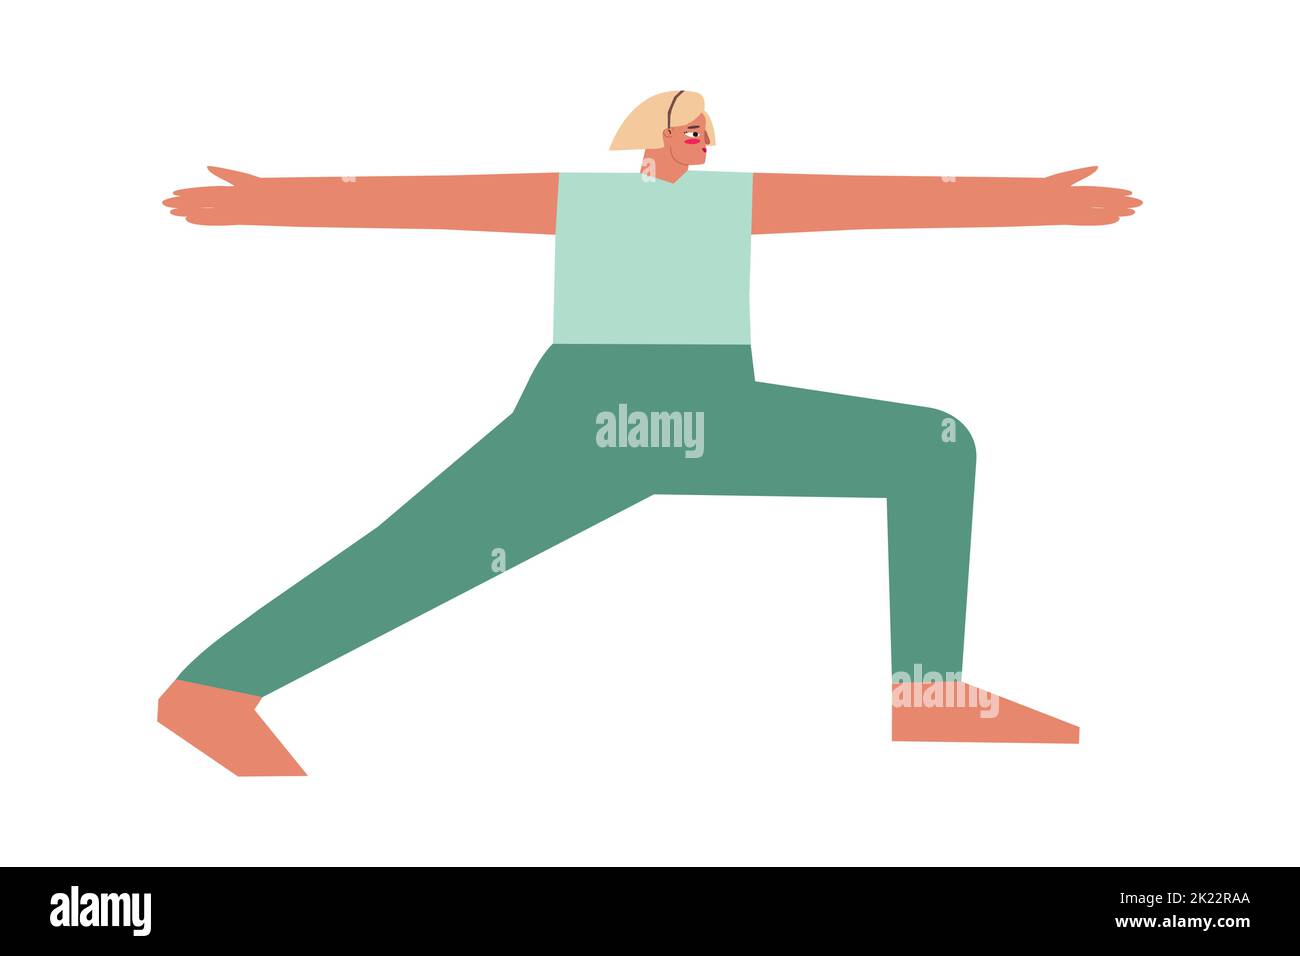 Vektor-isolierte Illustration mit flachem weiblichen Charakter. Sportliche Frau lernt im Yoga-Kurs die Standhaltung Virabhadrasana II. Fitness-Training - Wa Stock Vektor